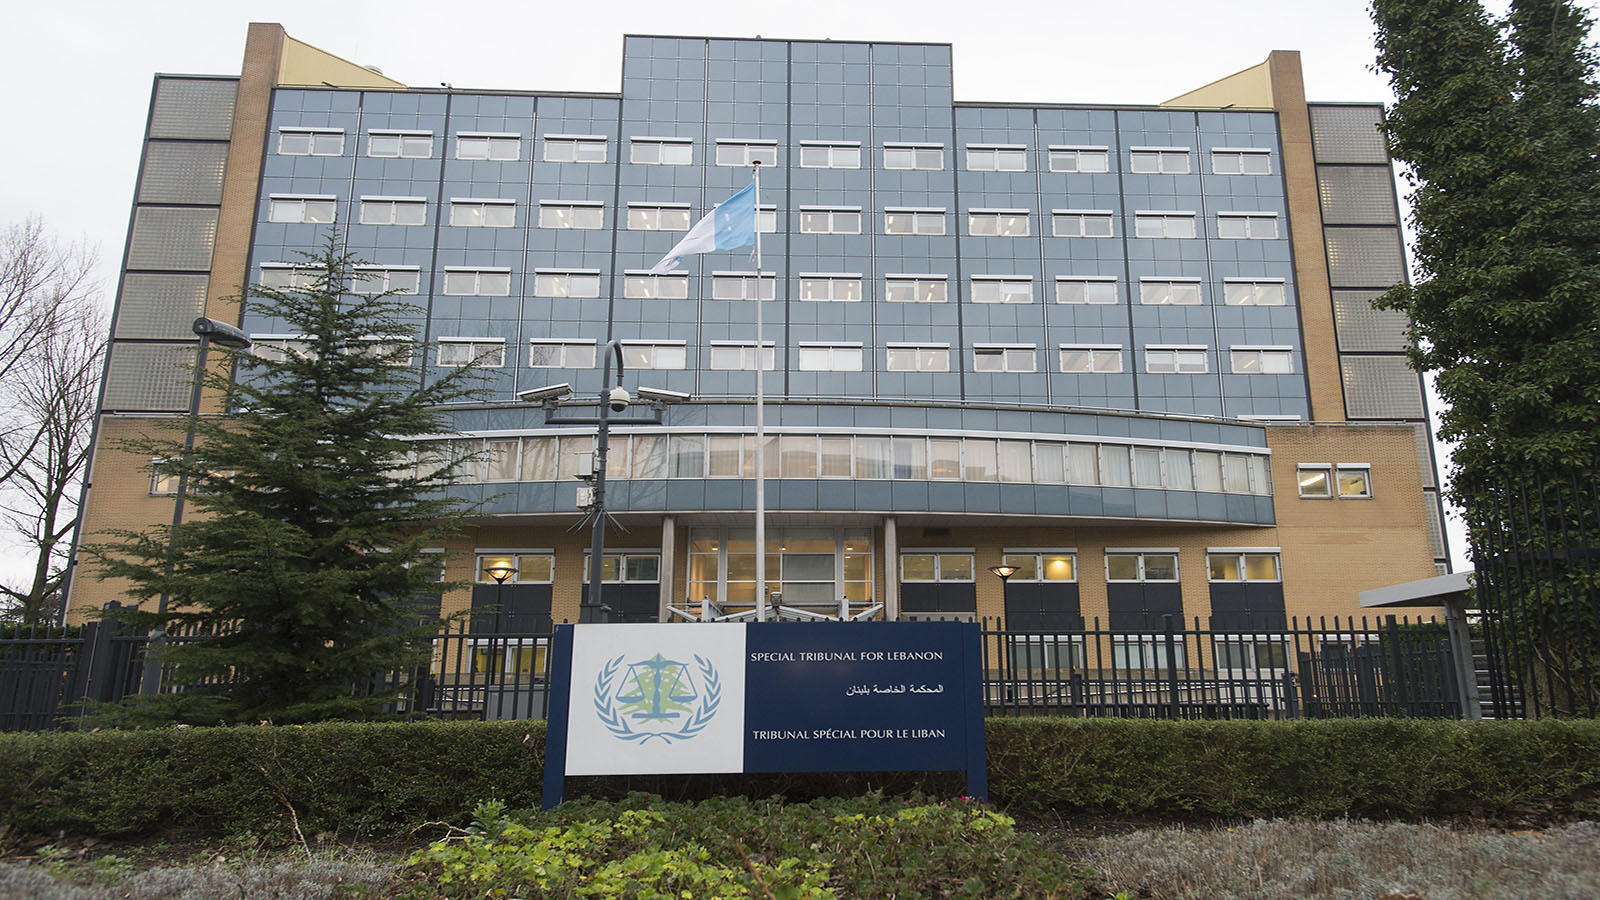 المحكمة الخاصة بلبنان: إلغاء افتتاح المحاكمة لنقص التمويل